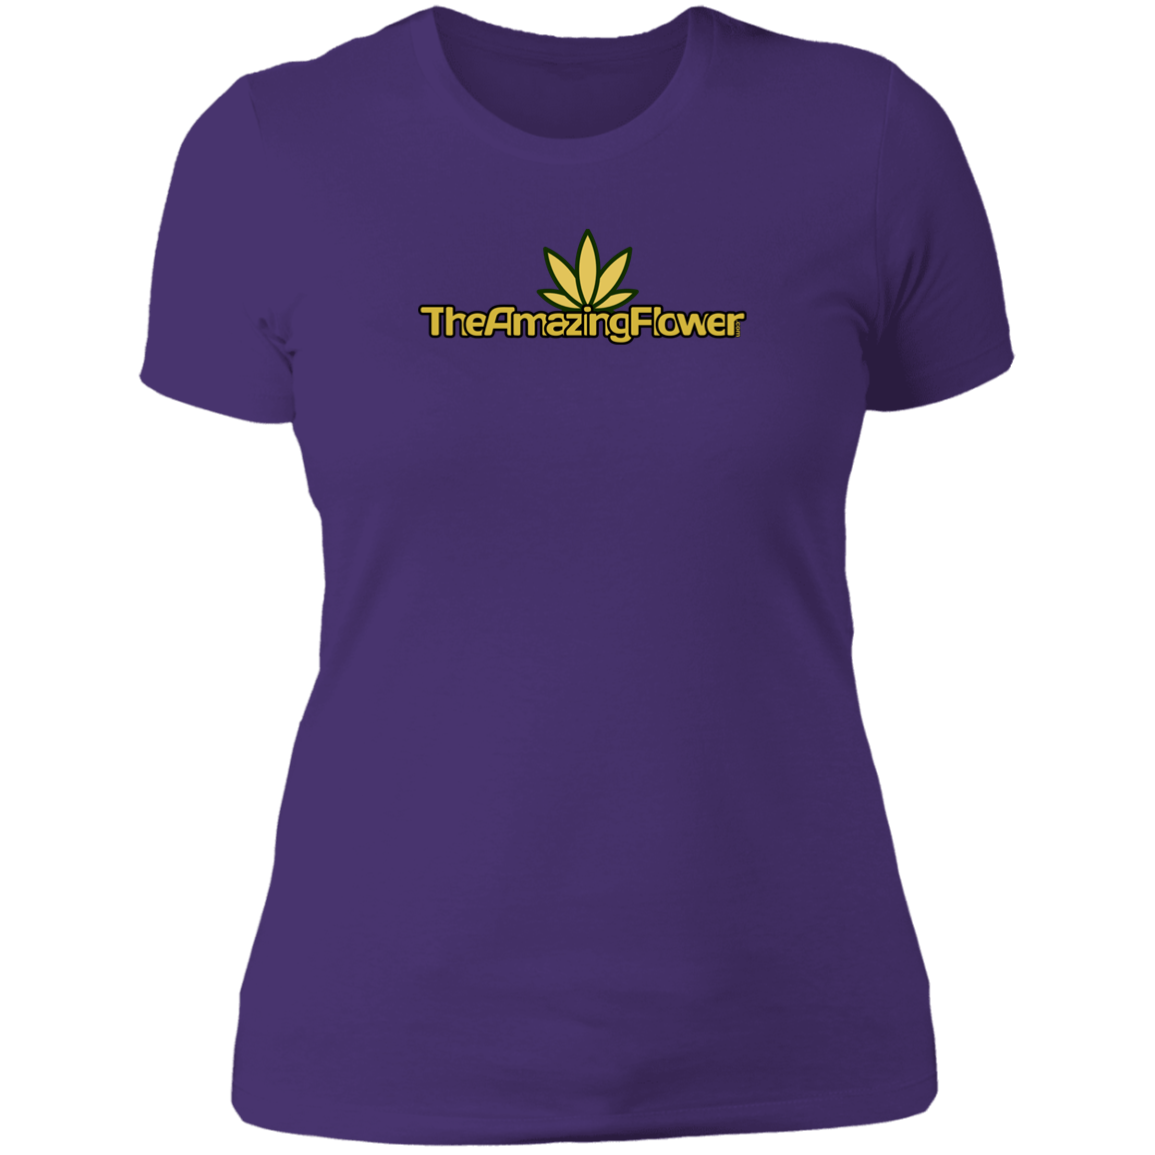 Old Gold Hemp Leaf Logo Women's T-Shirt in purple